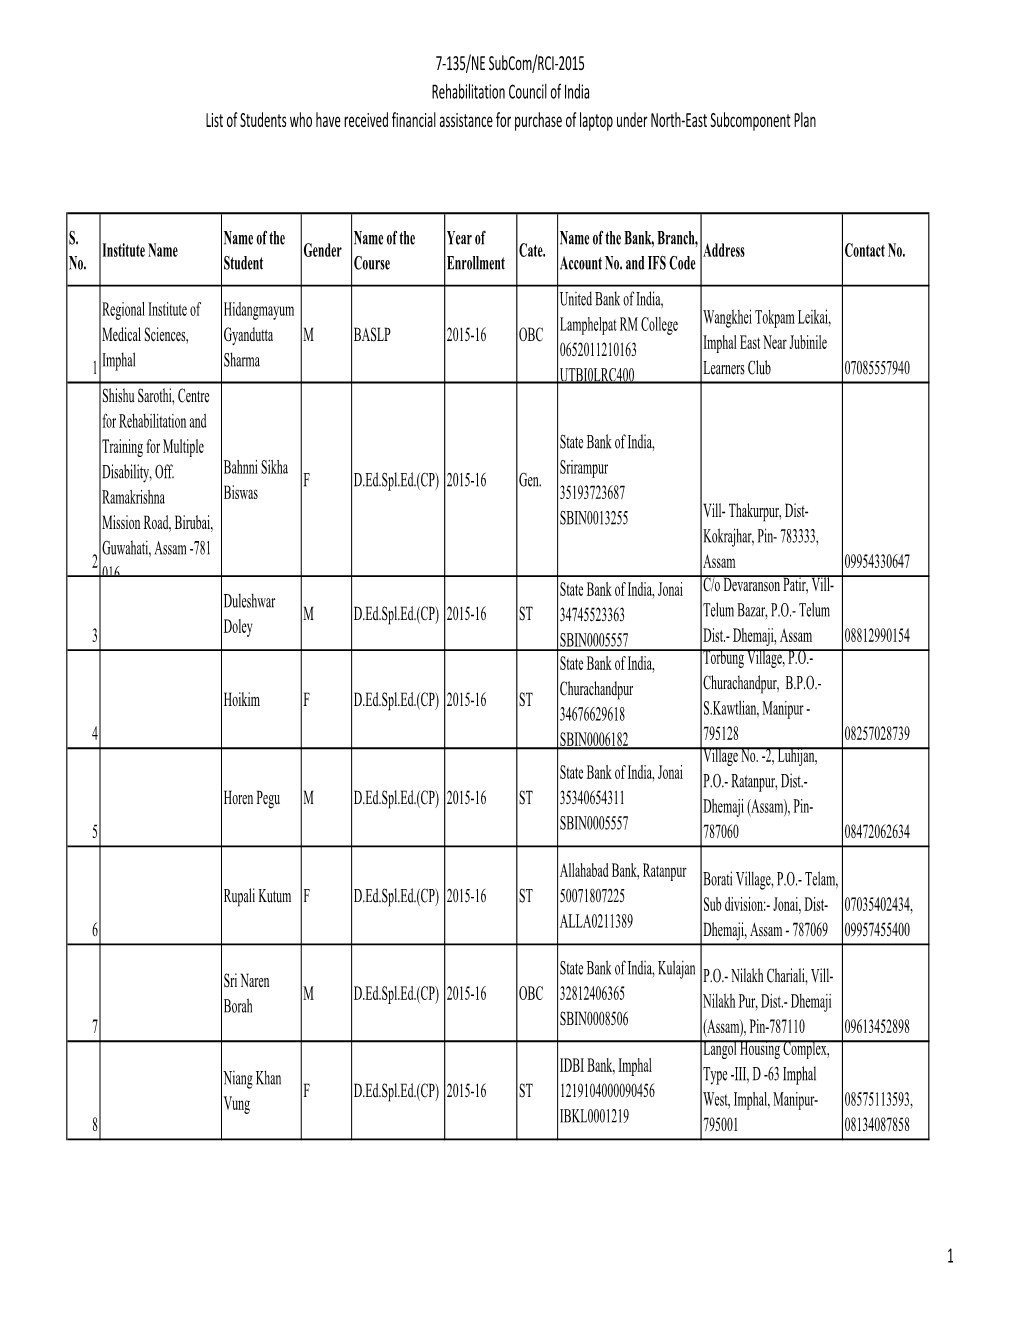 List of Students Under NE 2015-16.Xlsx